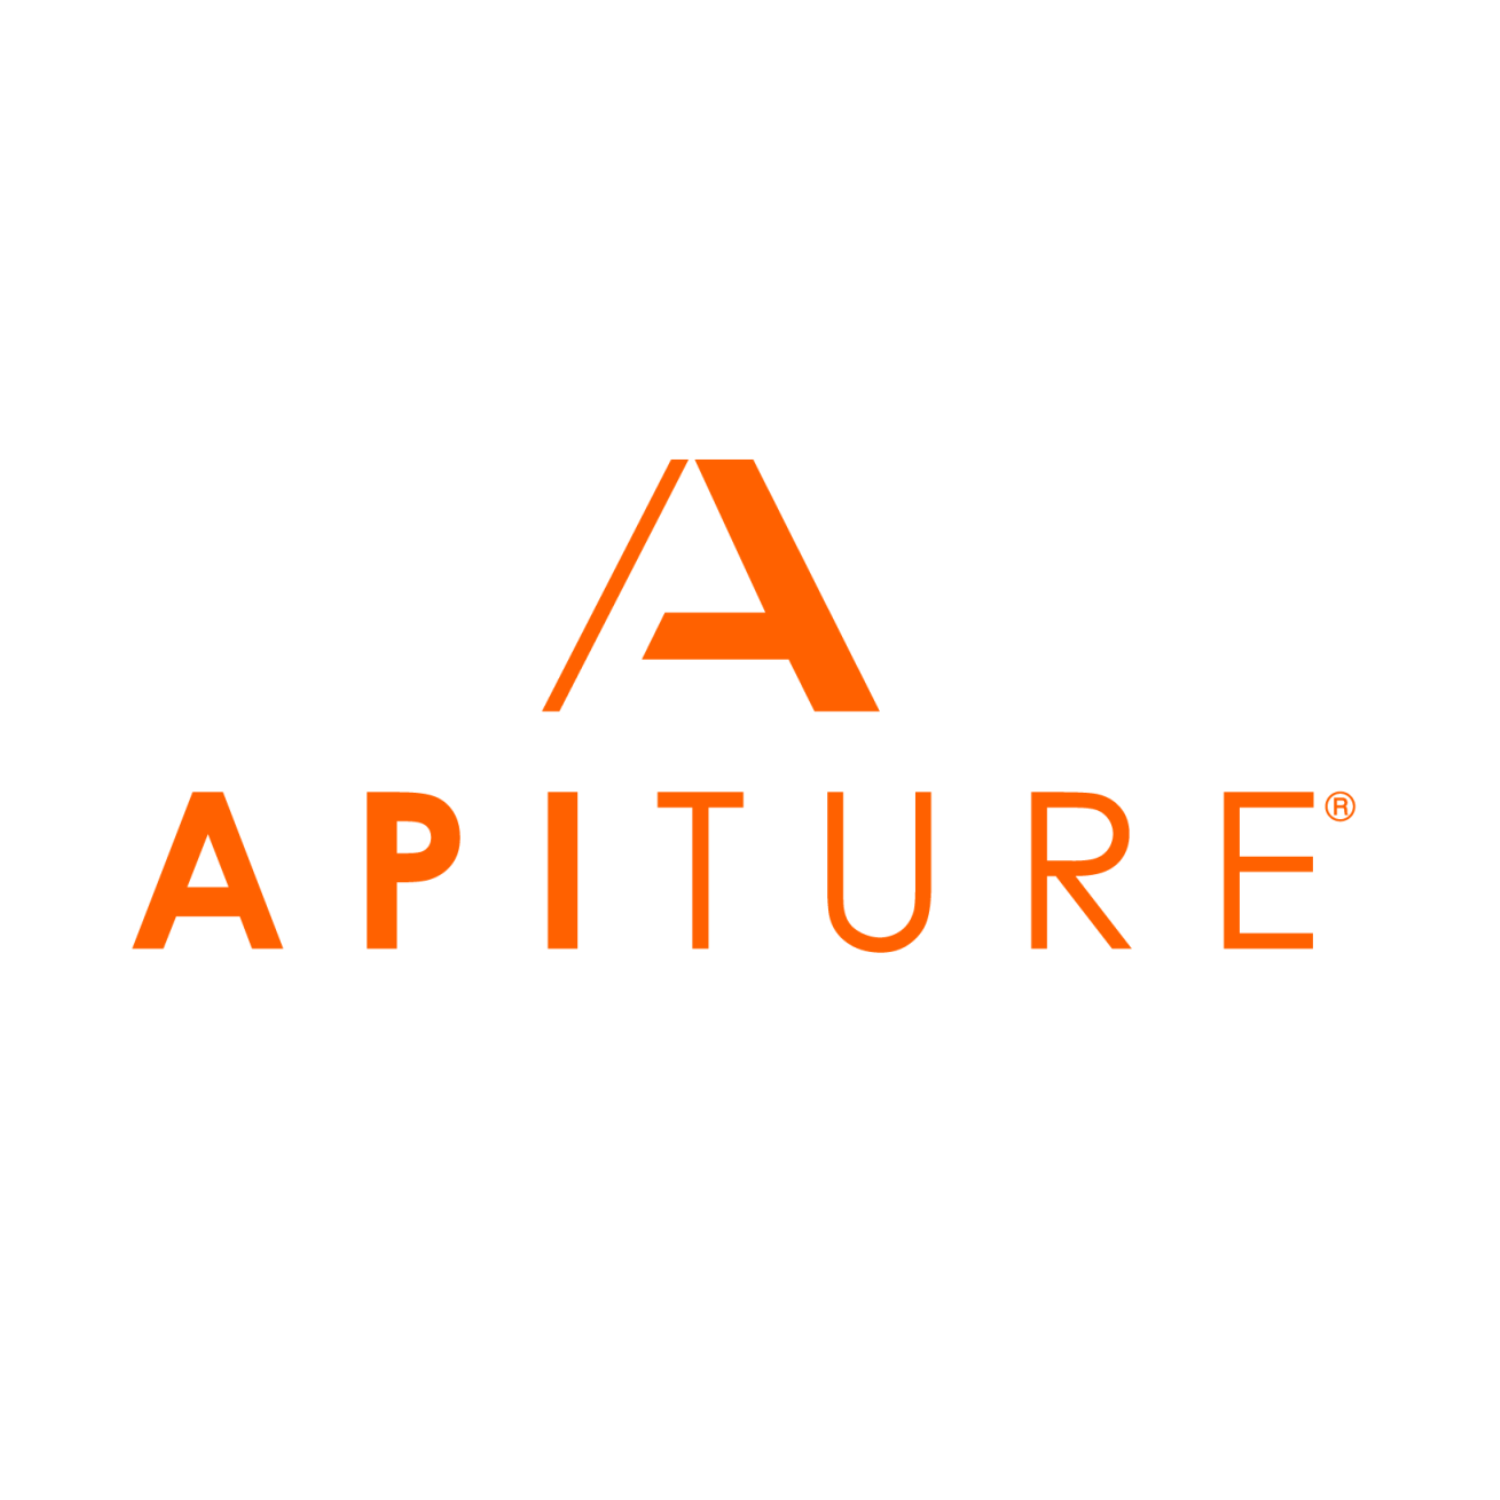 Apiture logo.png